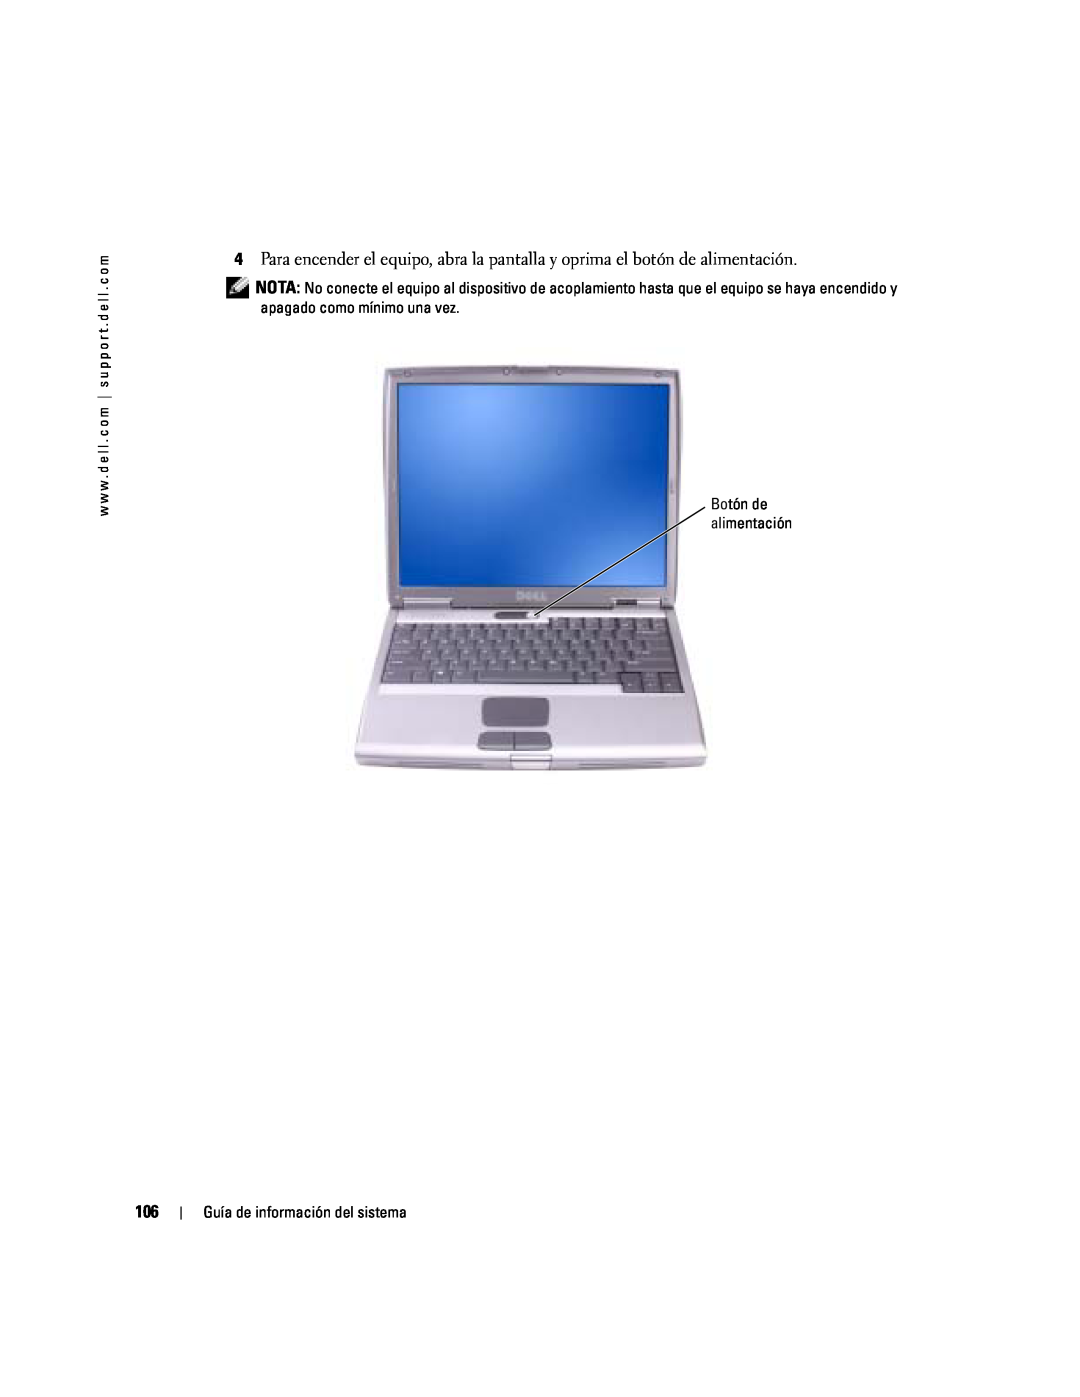 Dell D505 manual Guía de información del sistema 